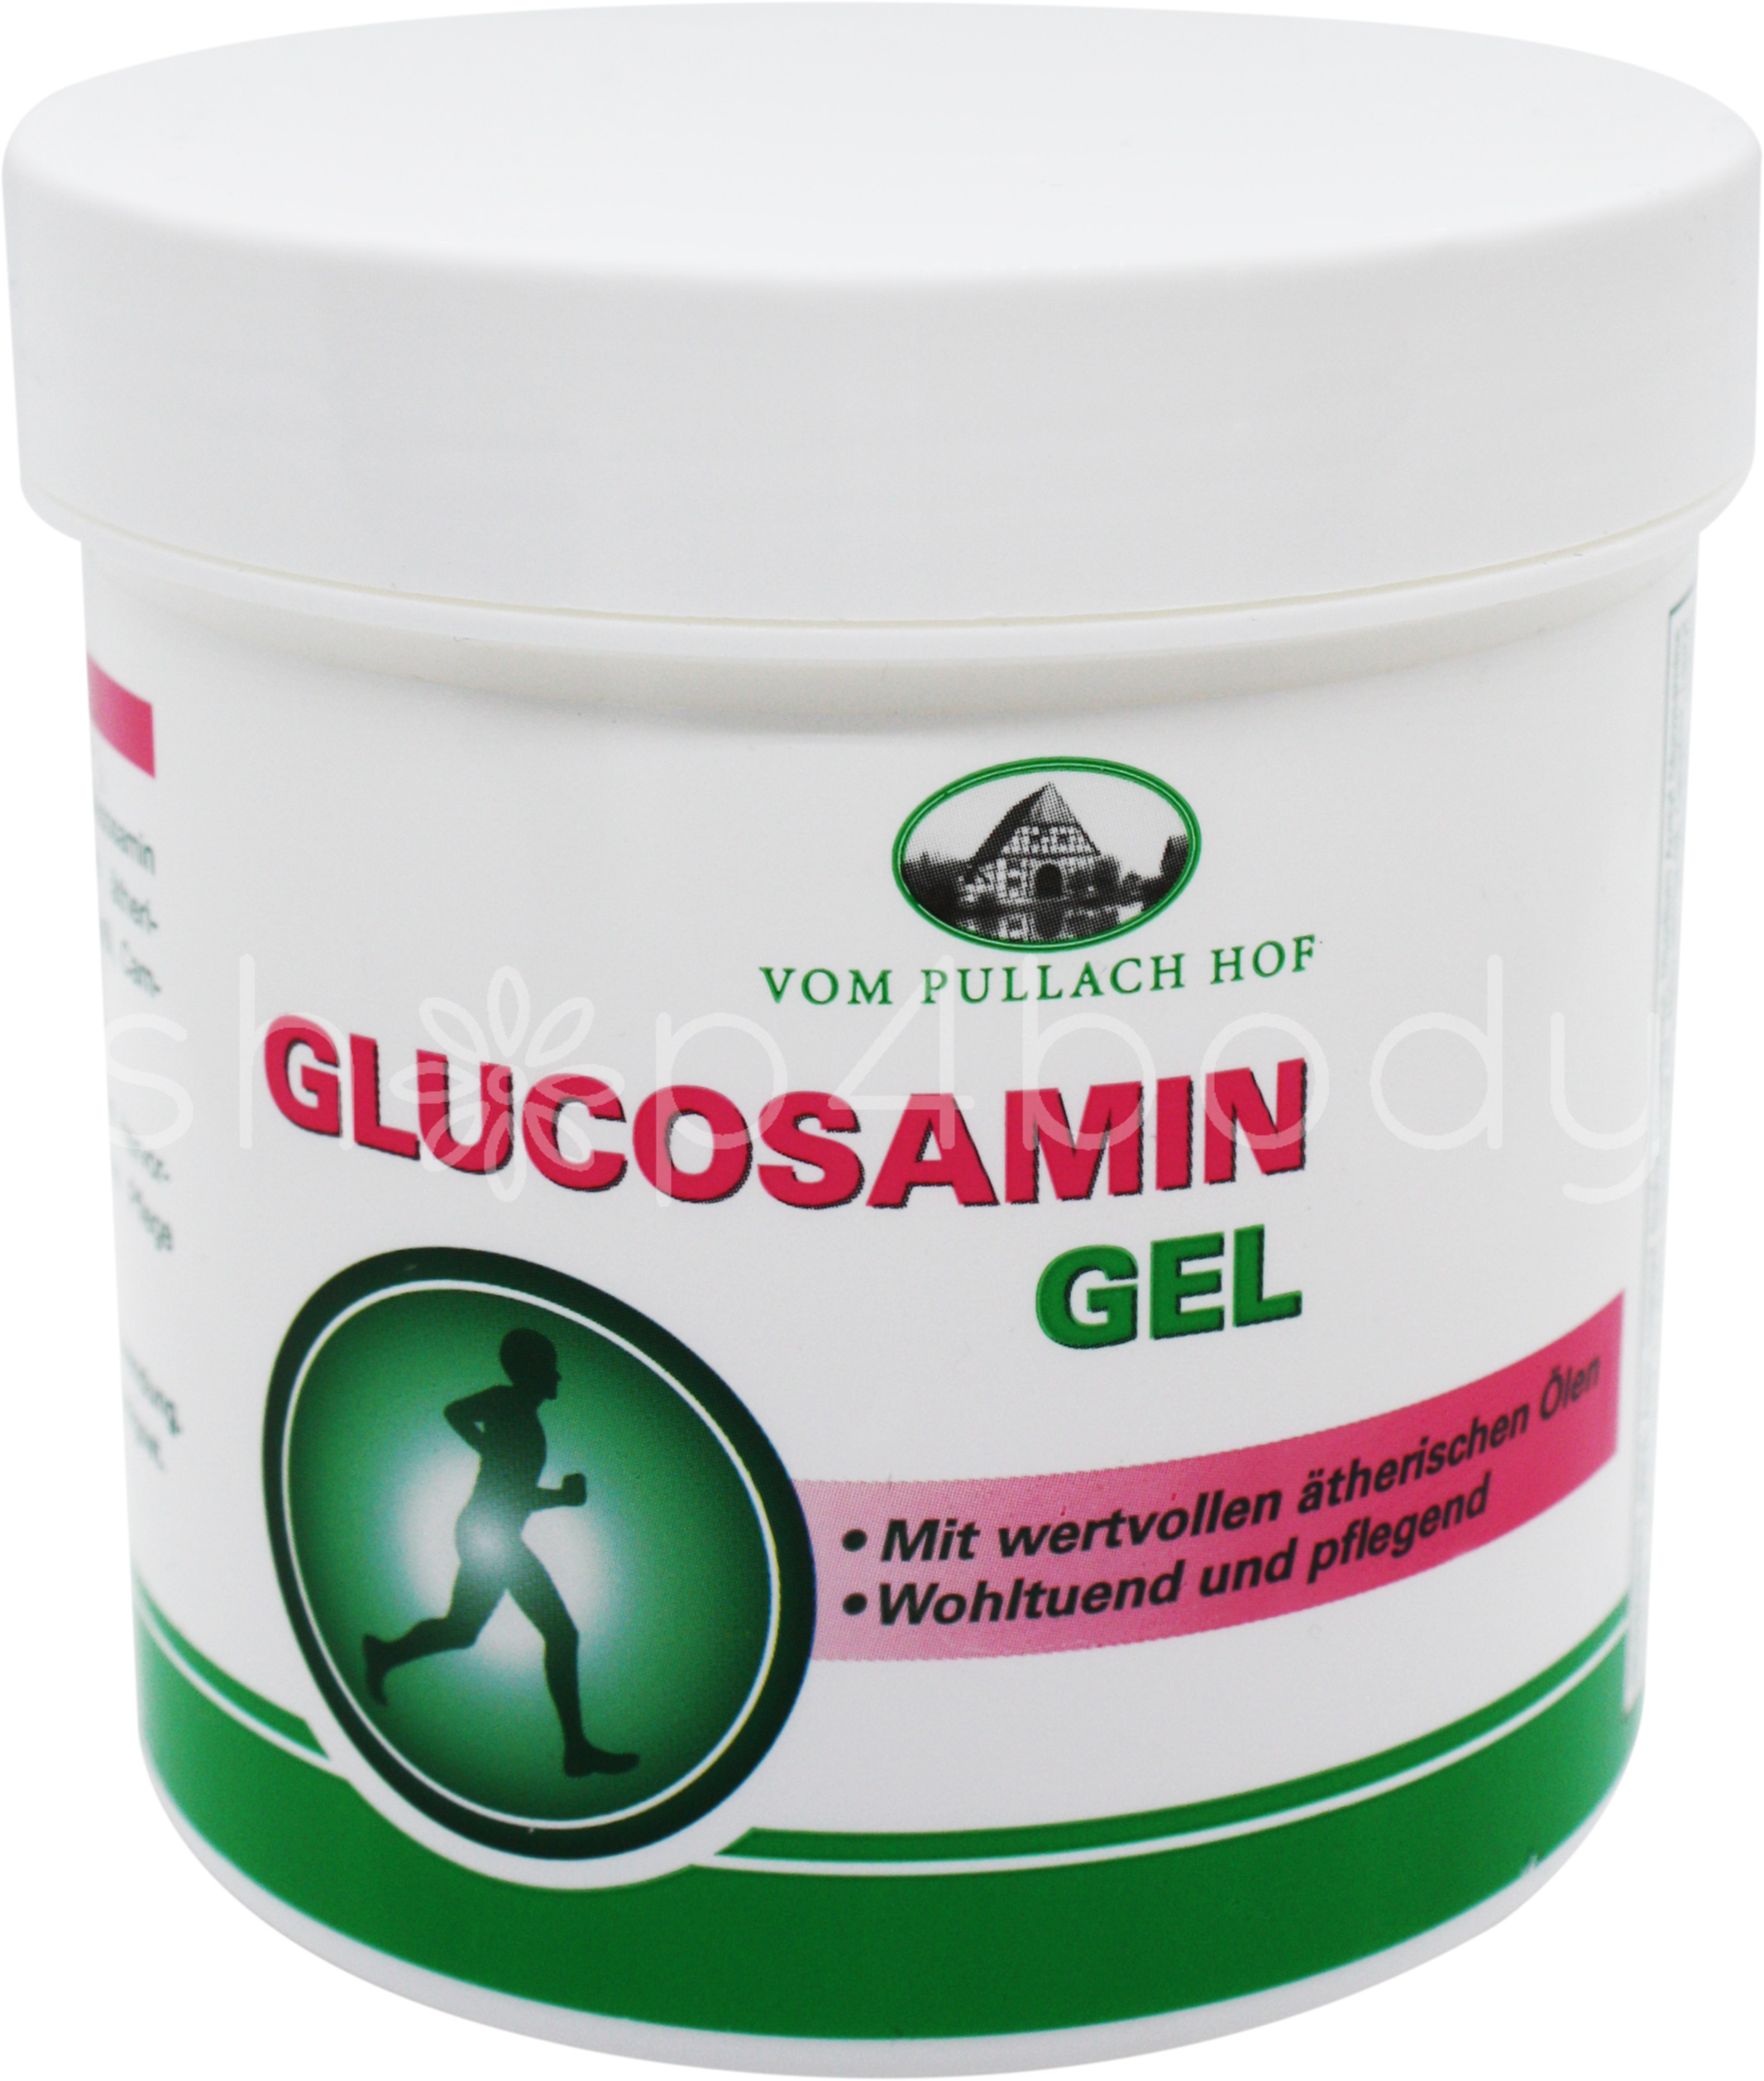 glucosamin-gel-250-ml-.jpg